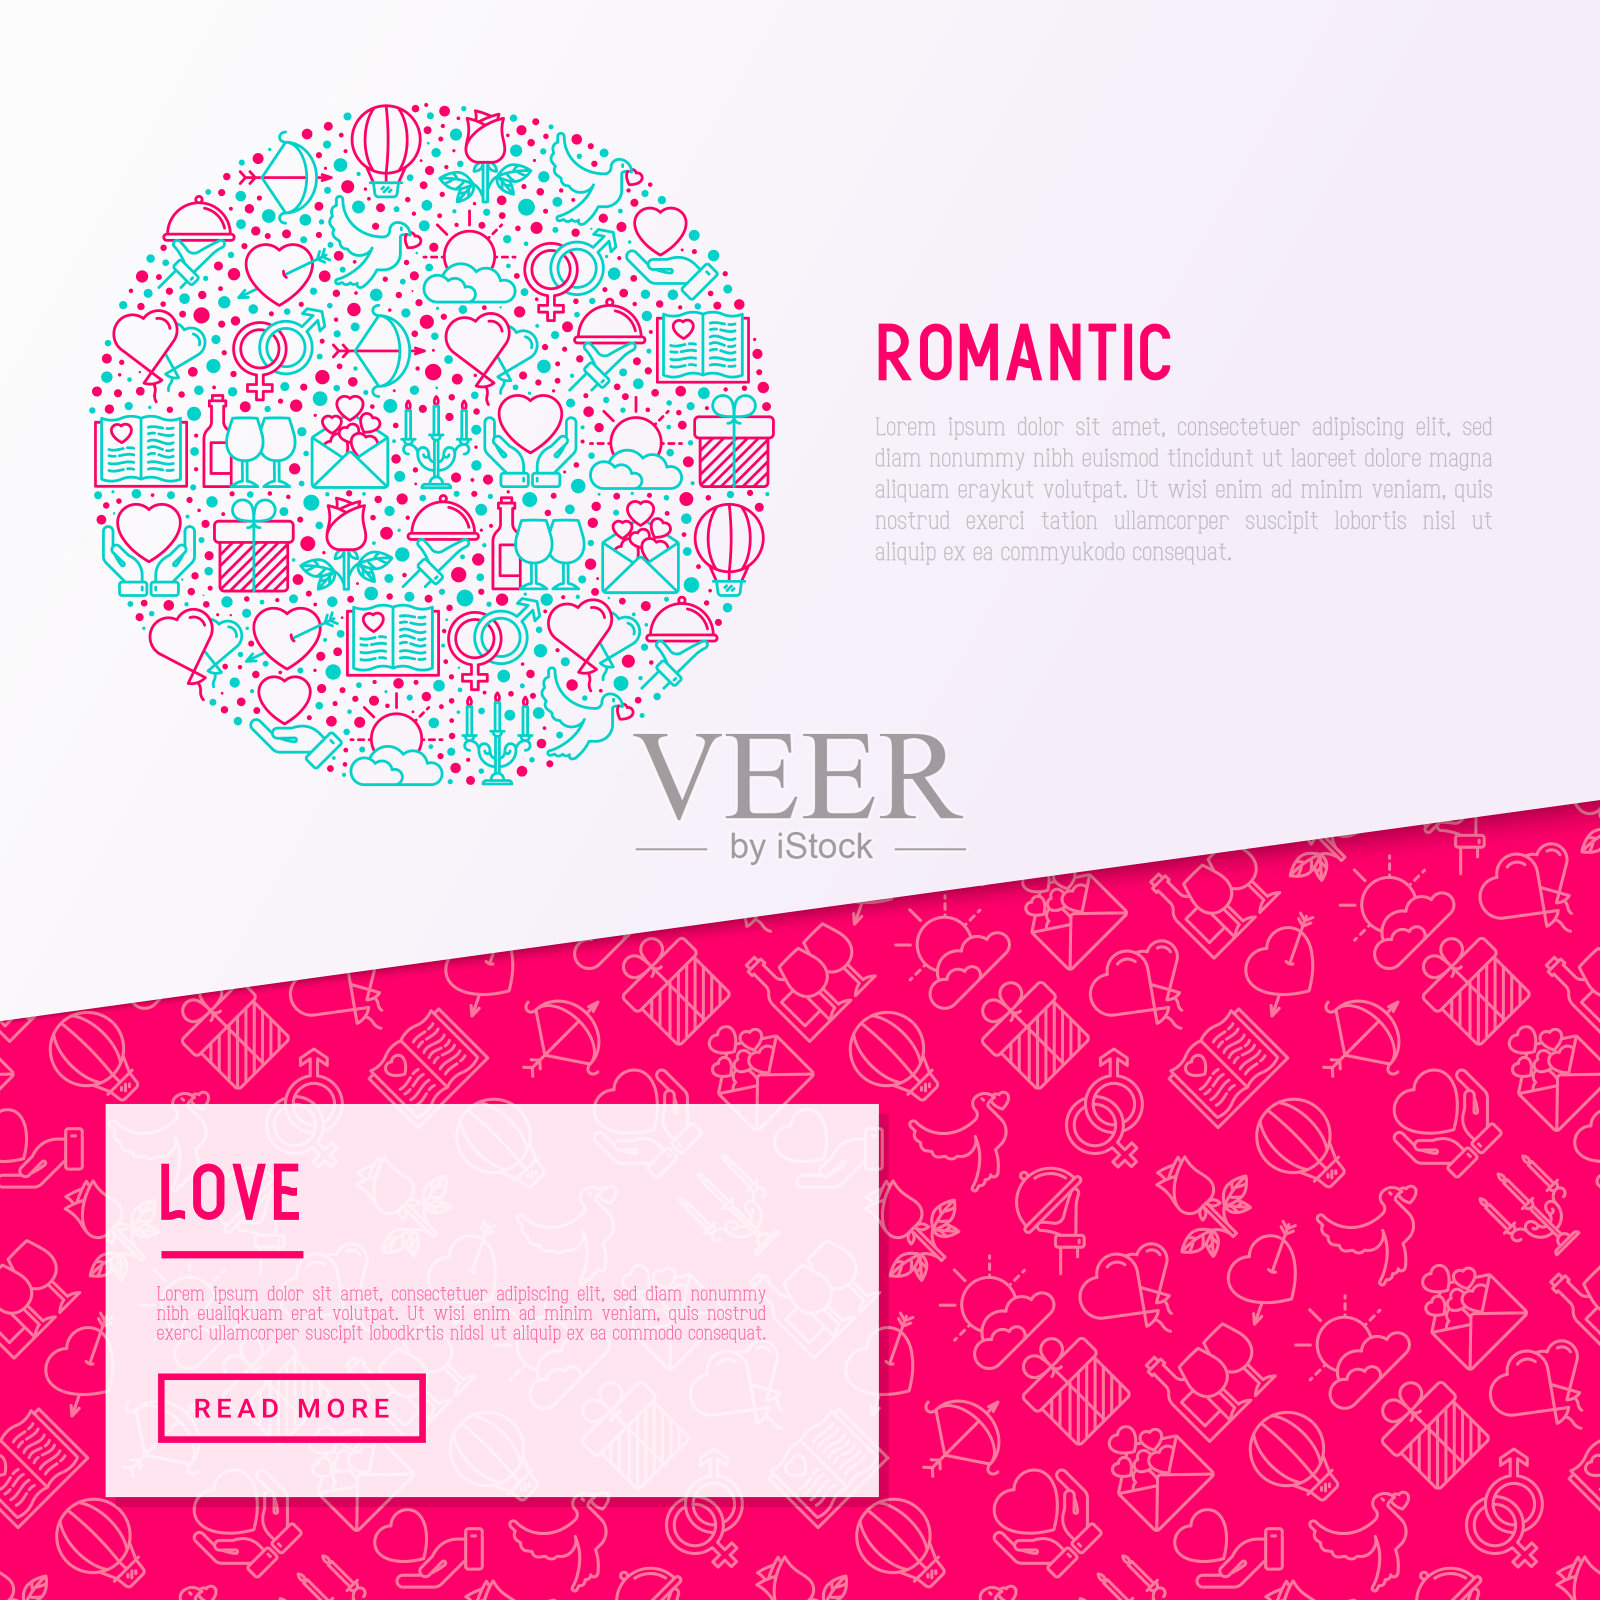 用细线圈出的浪漫概念，与约会、蜜月、情人节有关。现代矢量插图，网页模板关于情人节。设计模板素材